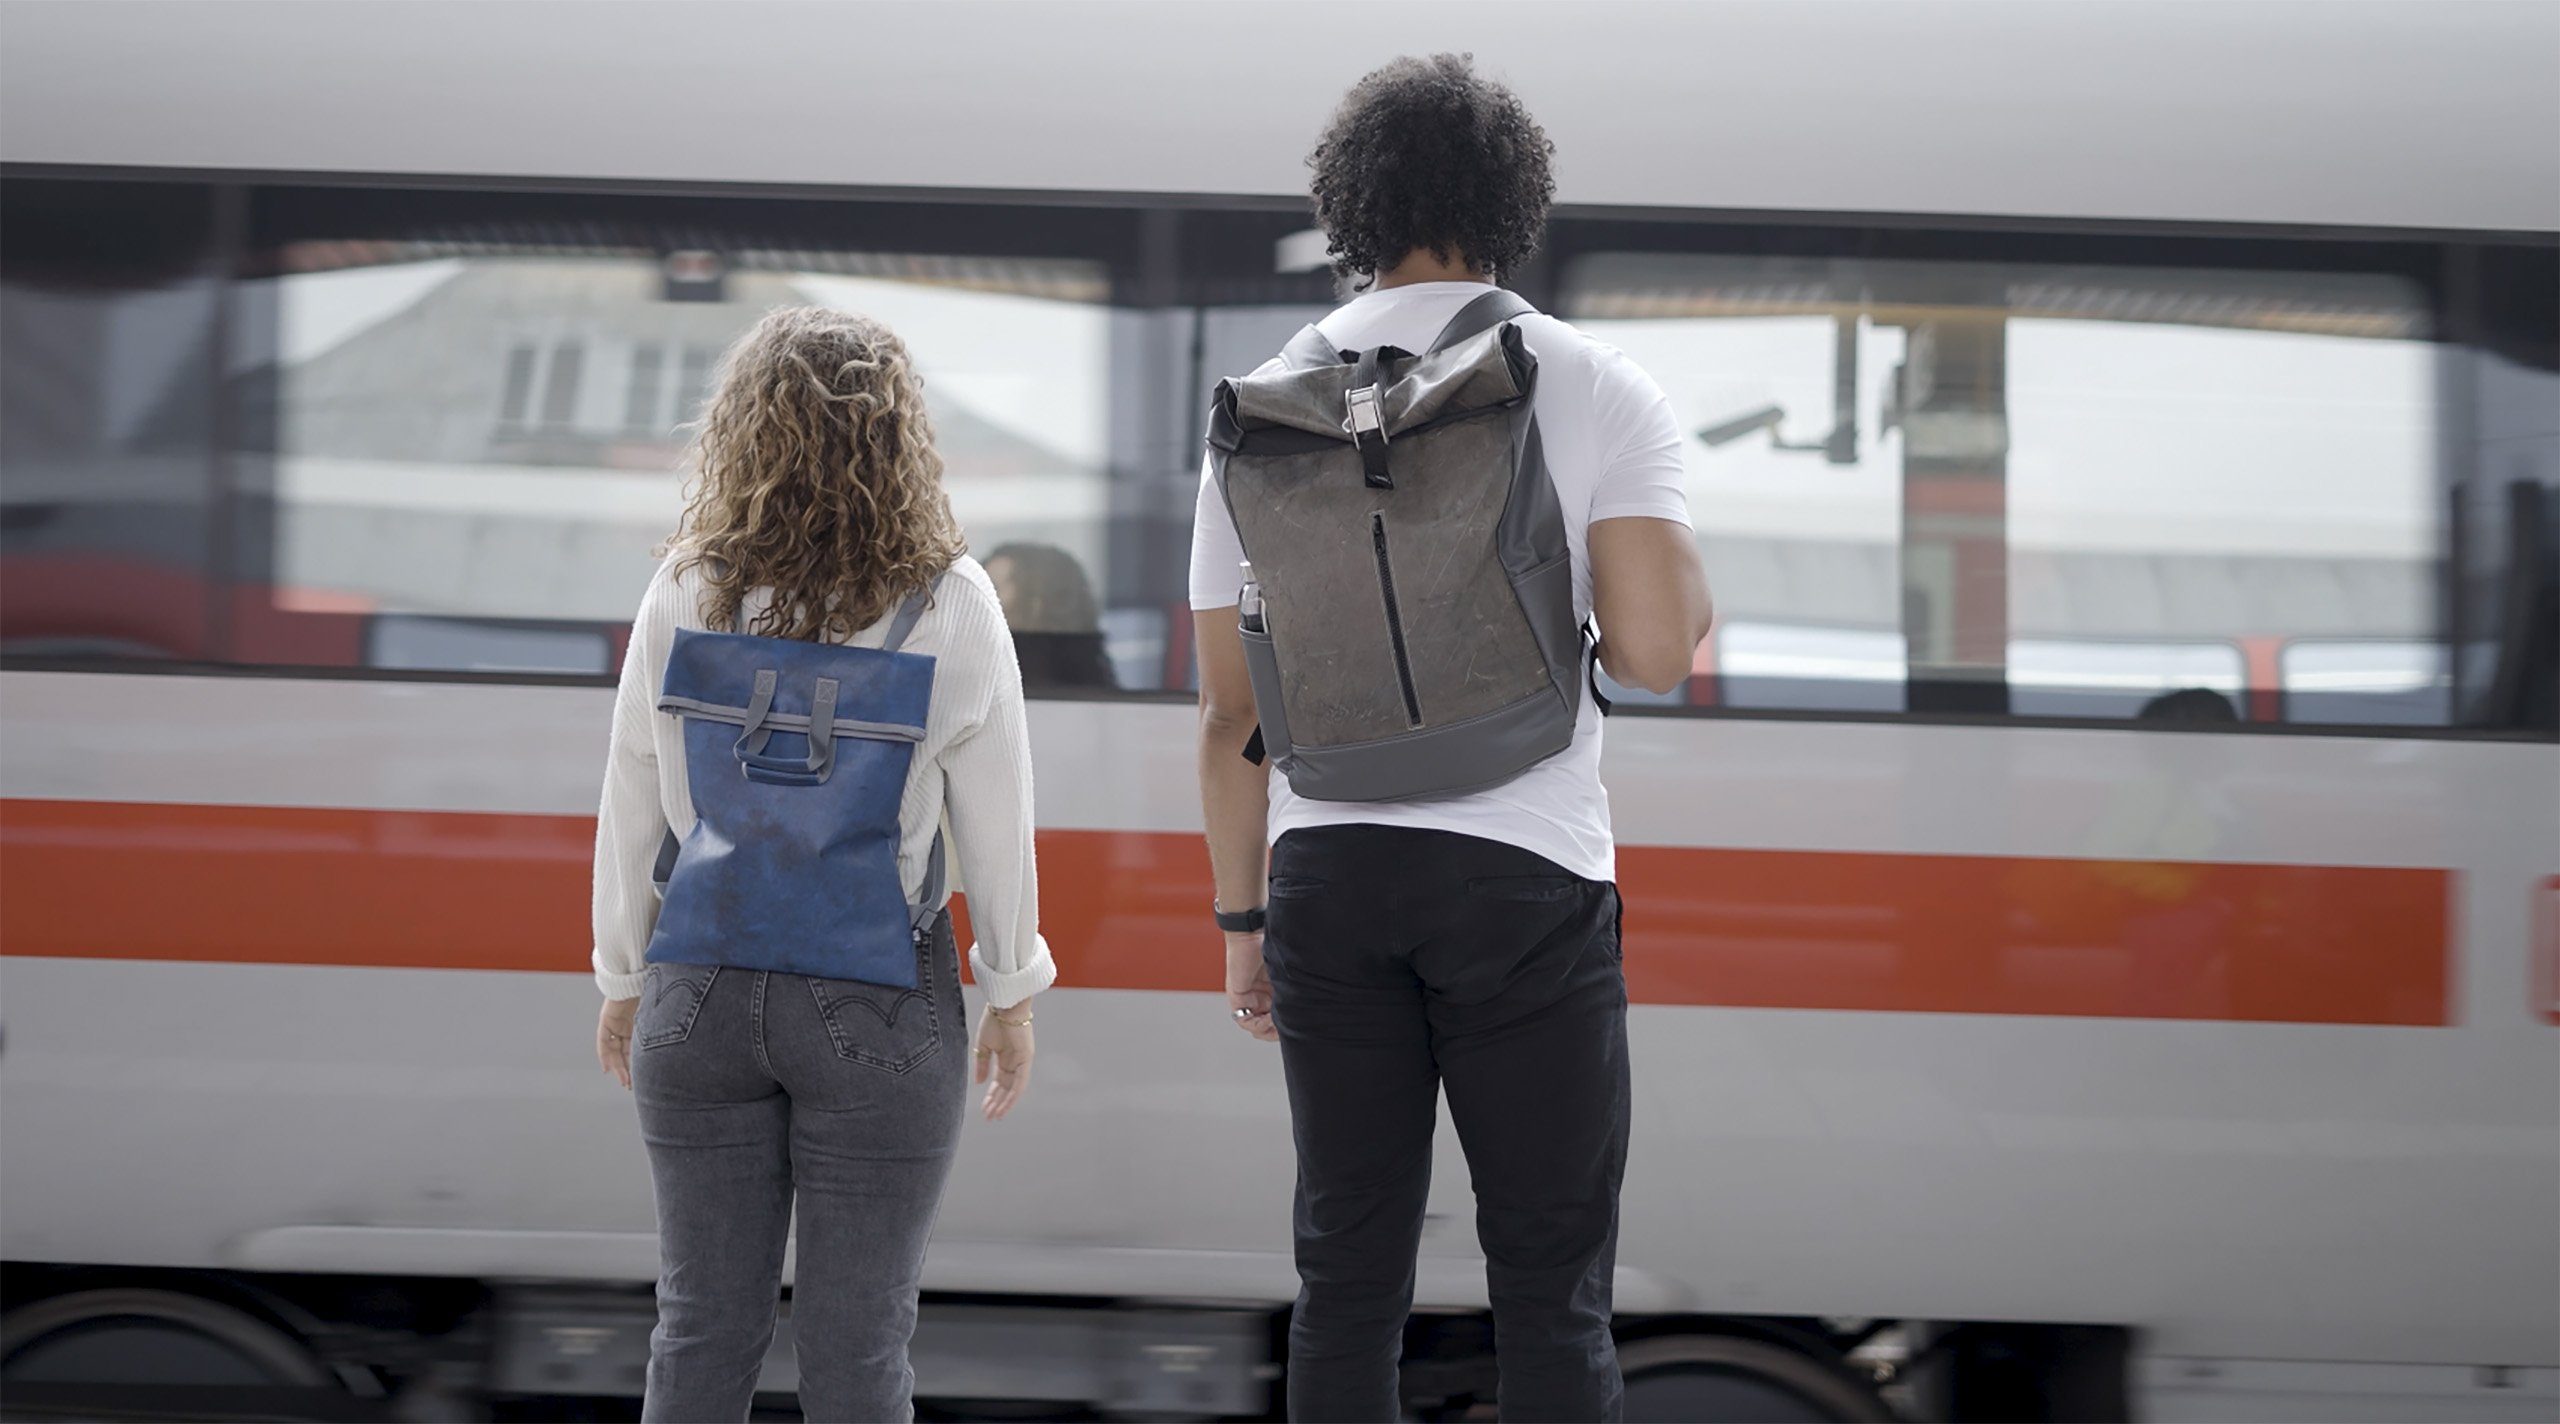 Design im Jettainer to Slim Freizeitrucksack Backpack, ULD praktischen Bag Life